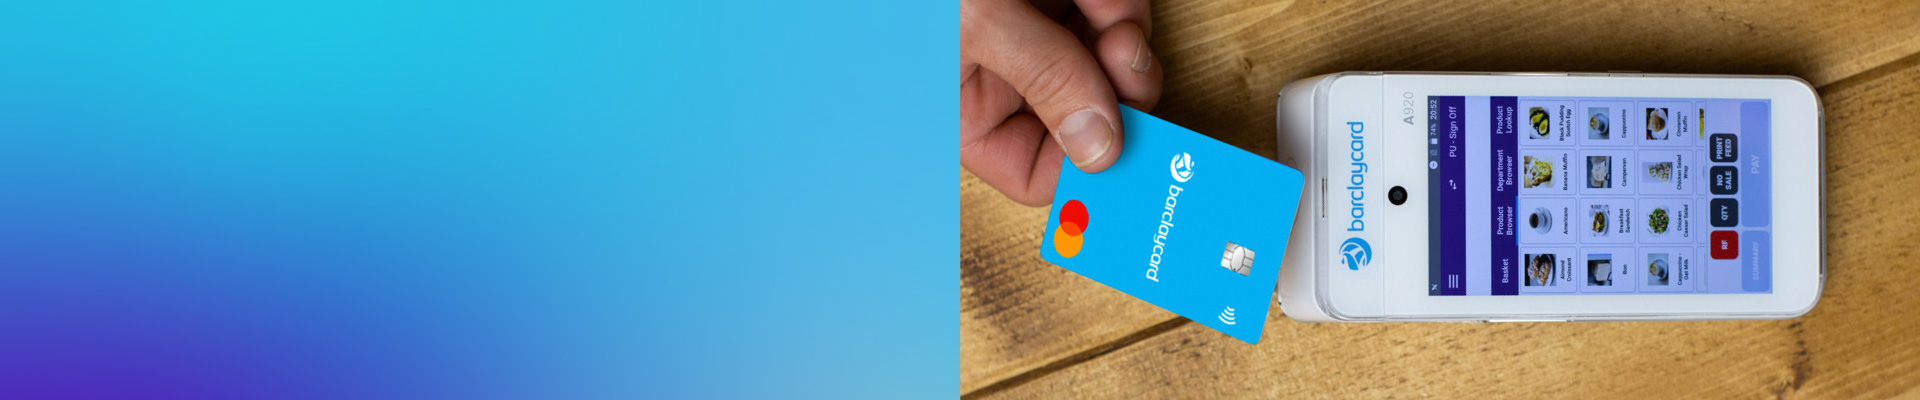 Barclaycard 10% cashback offer